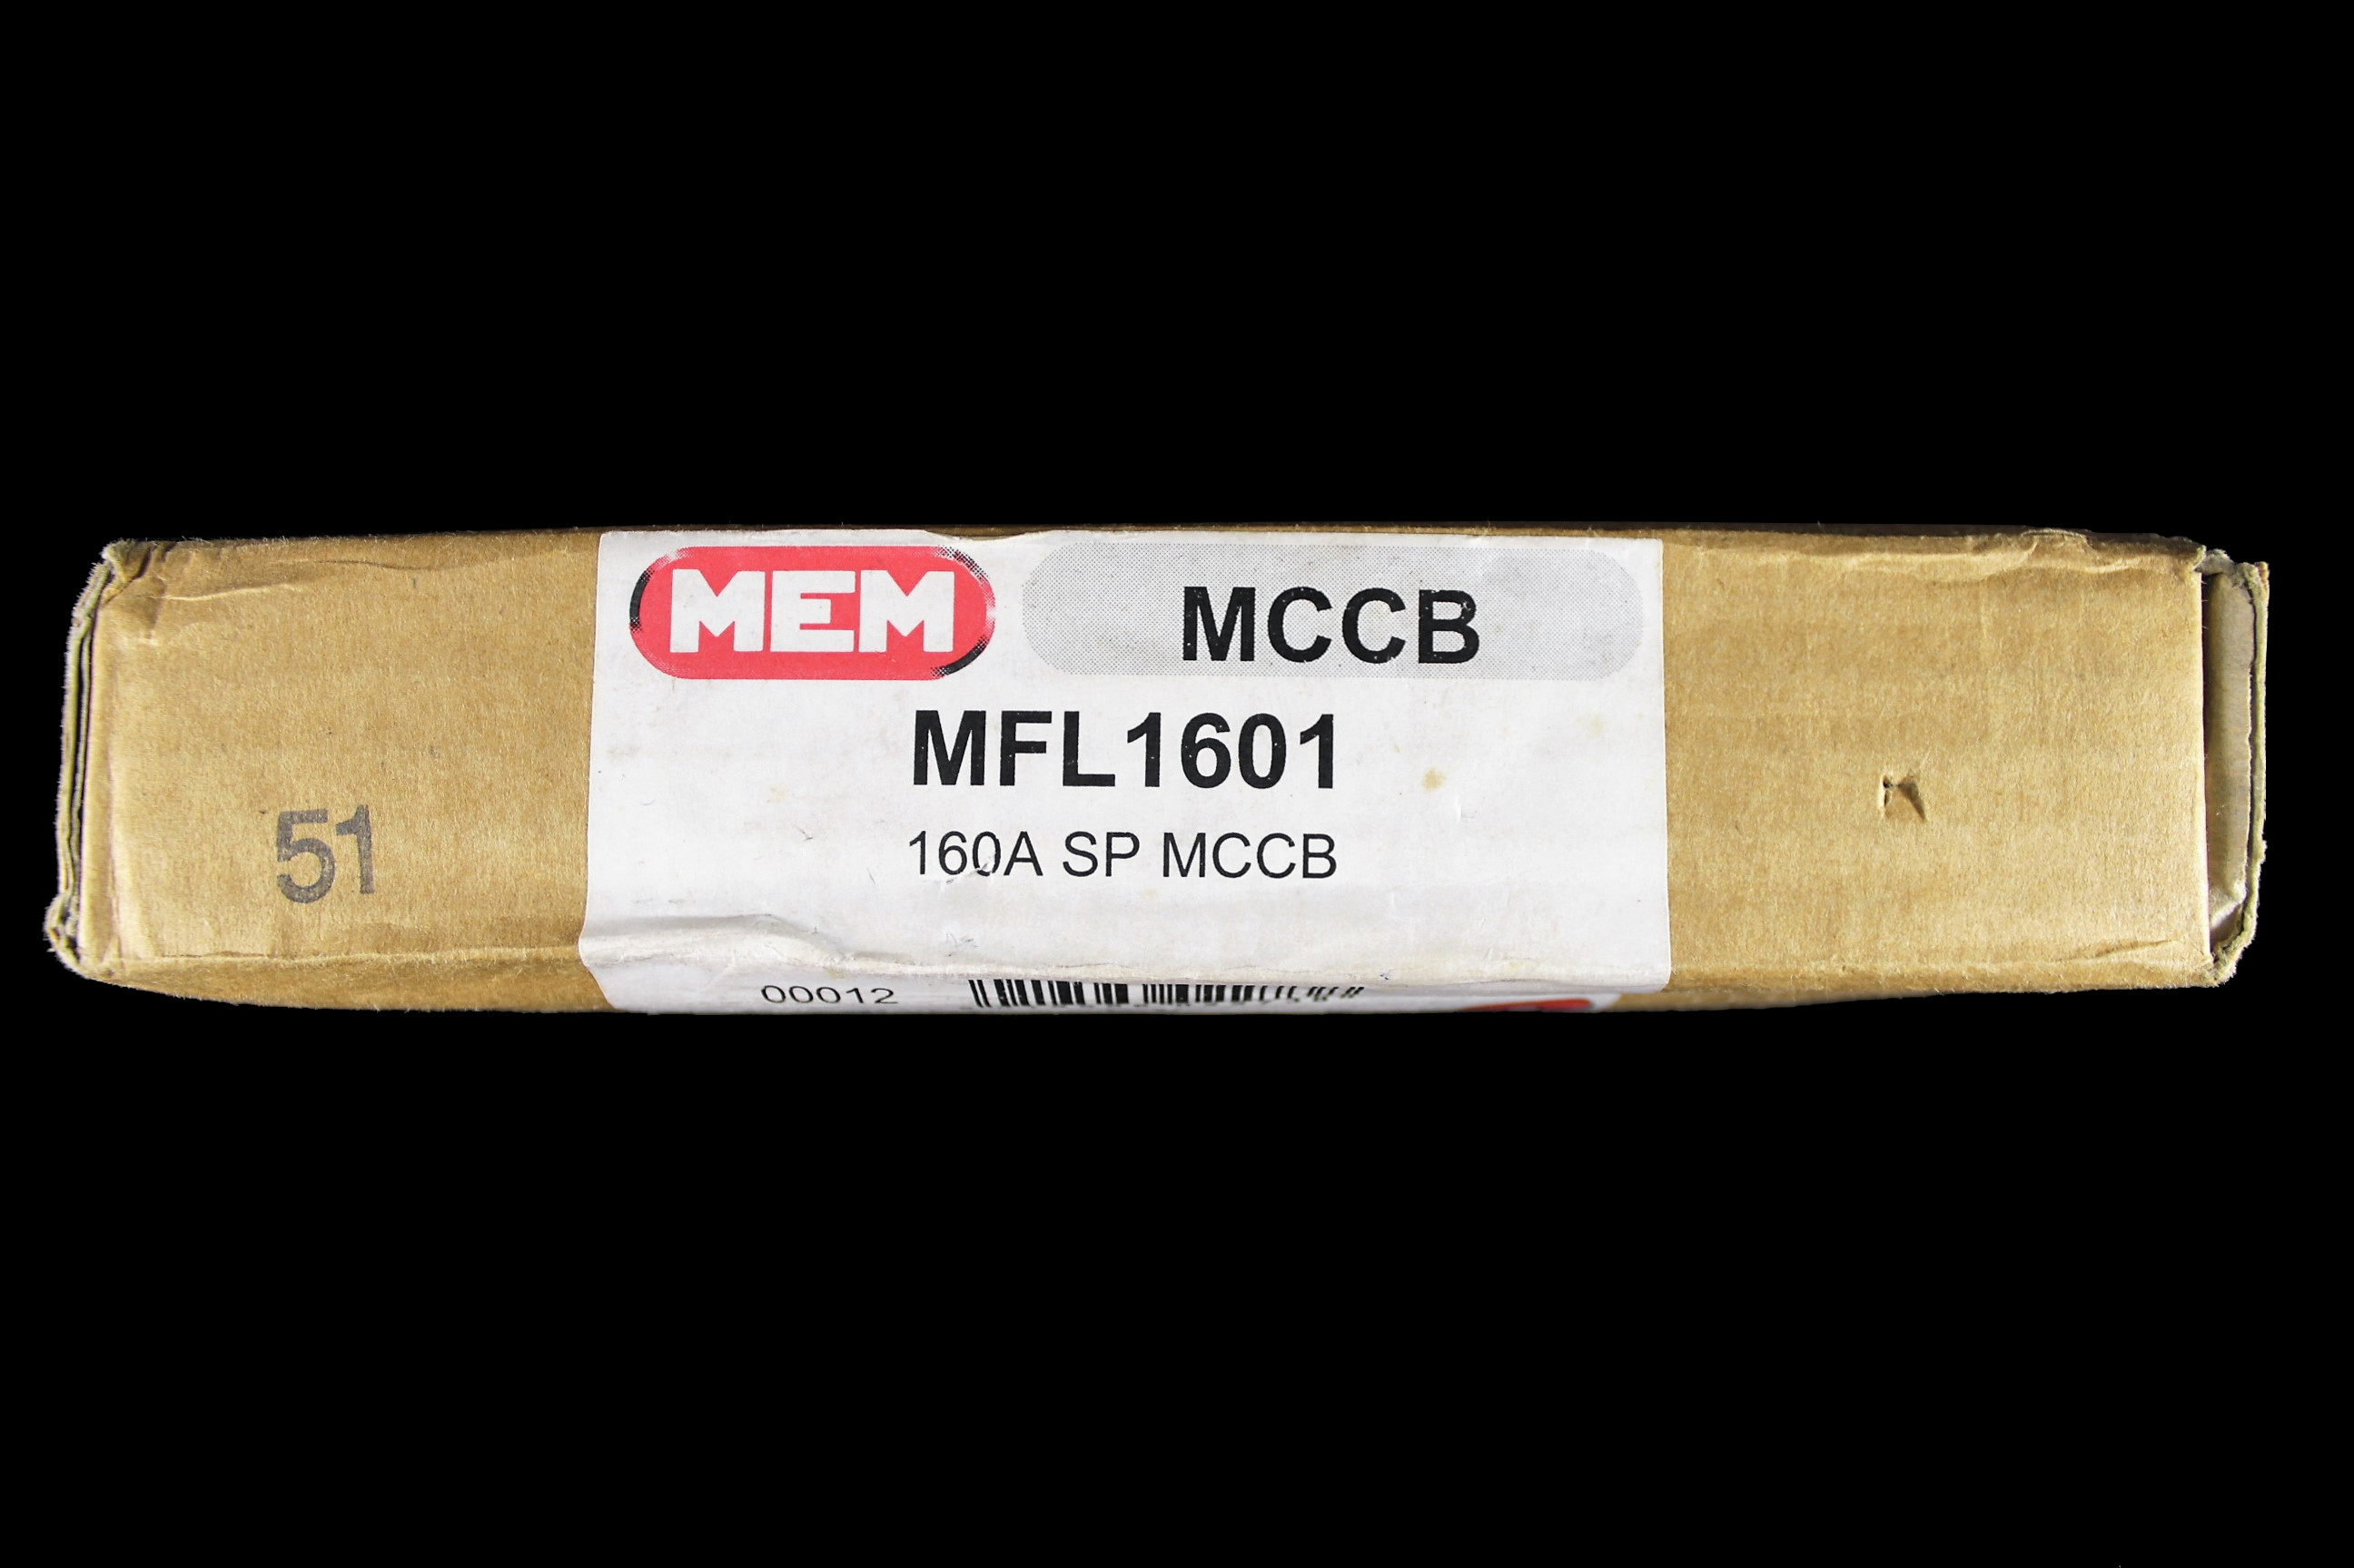 MEM 160 AMP 25kA MCCB MFL1601